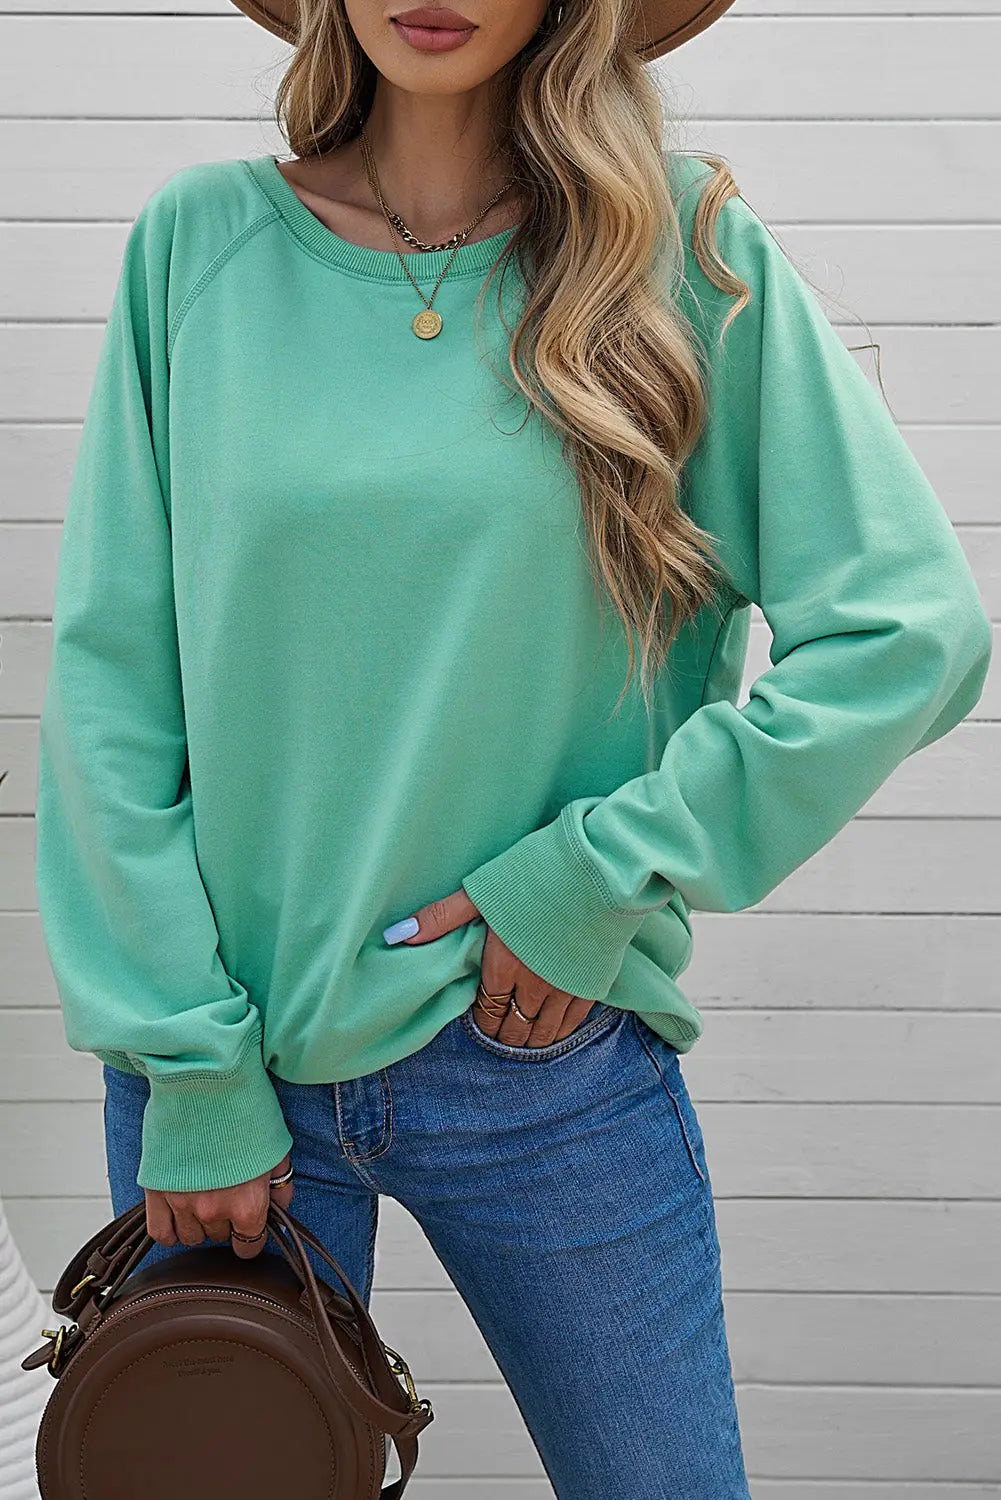 Pink pumpkin spice reglan sleeve sweatshirt - green / 2xl / 62.7% polyester + 37.3% cotton - graphic